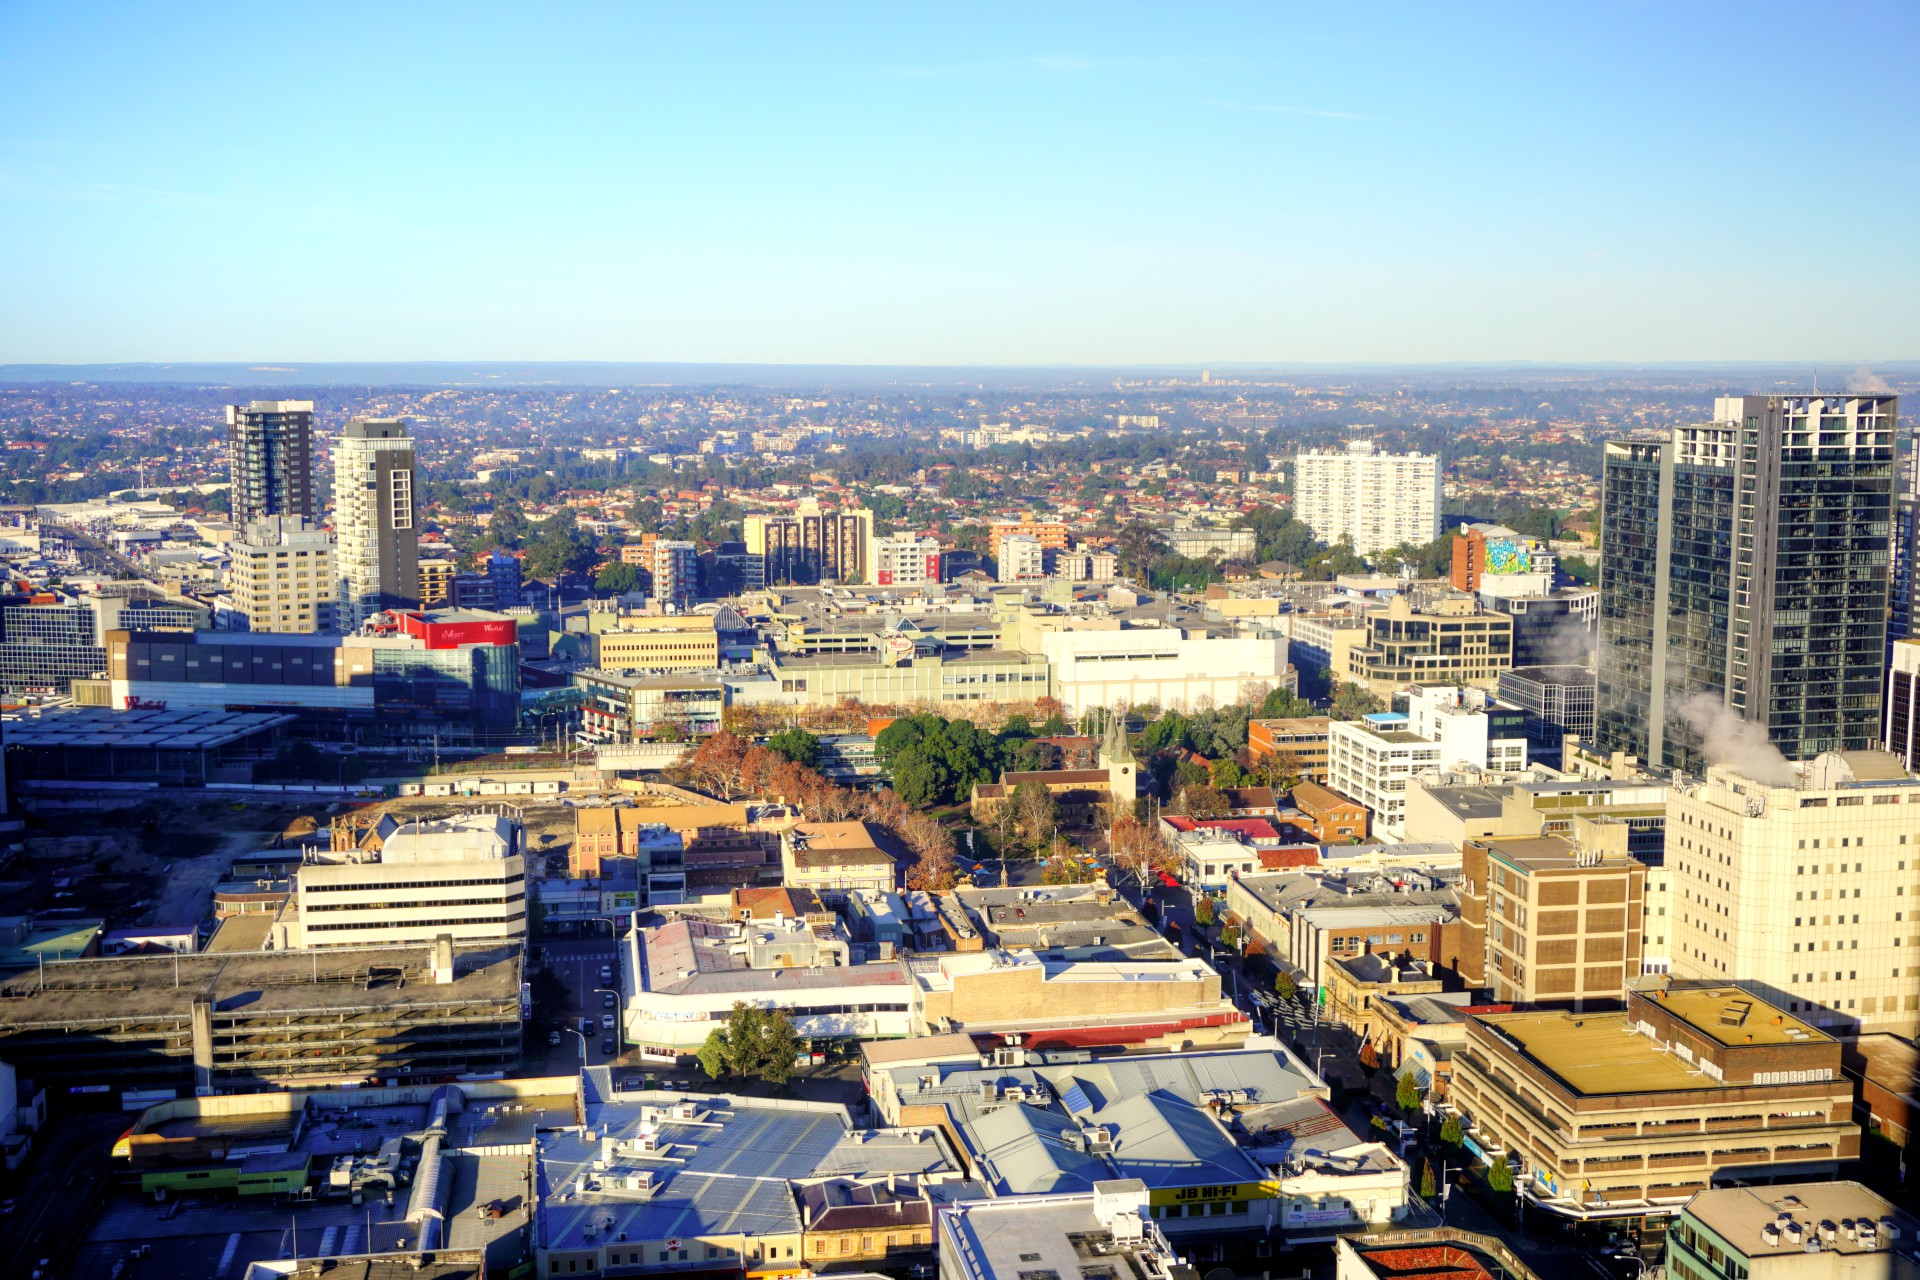 Parramatta Image 1